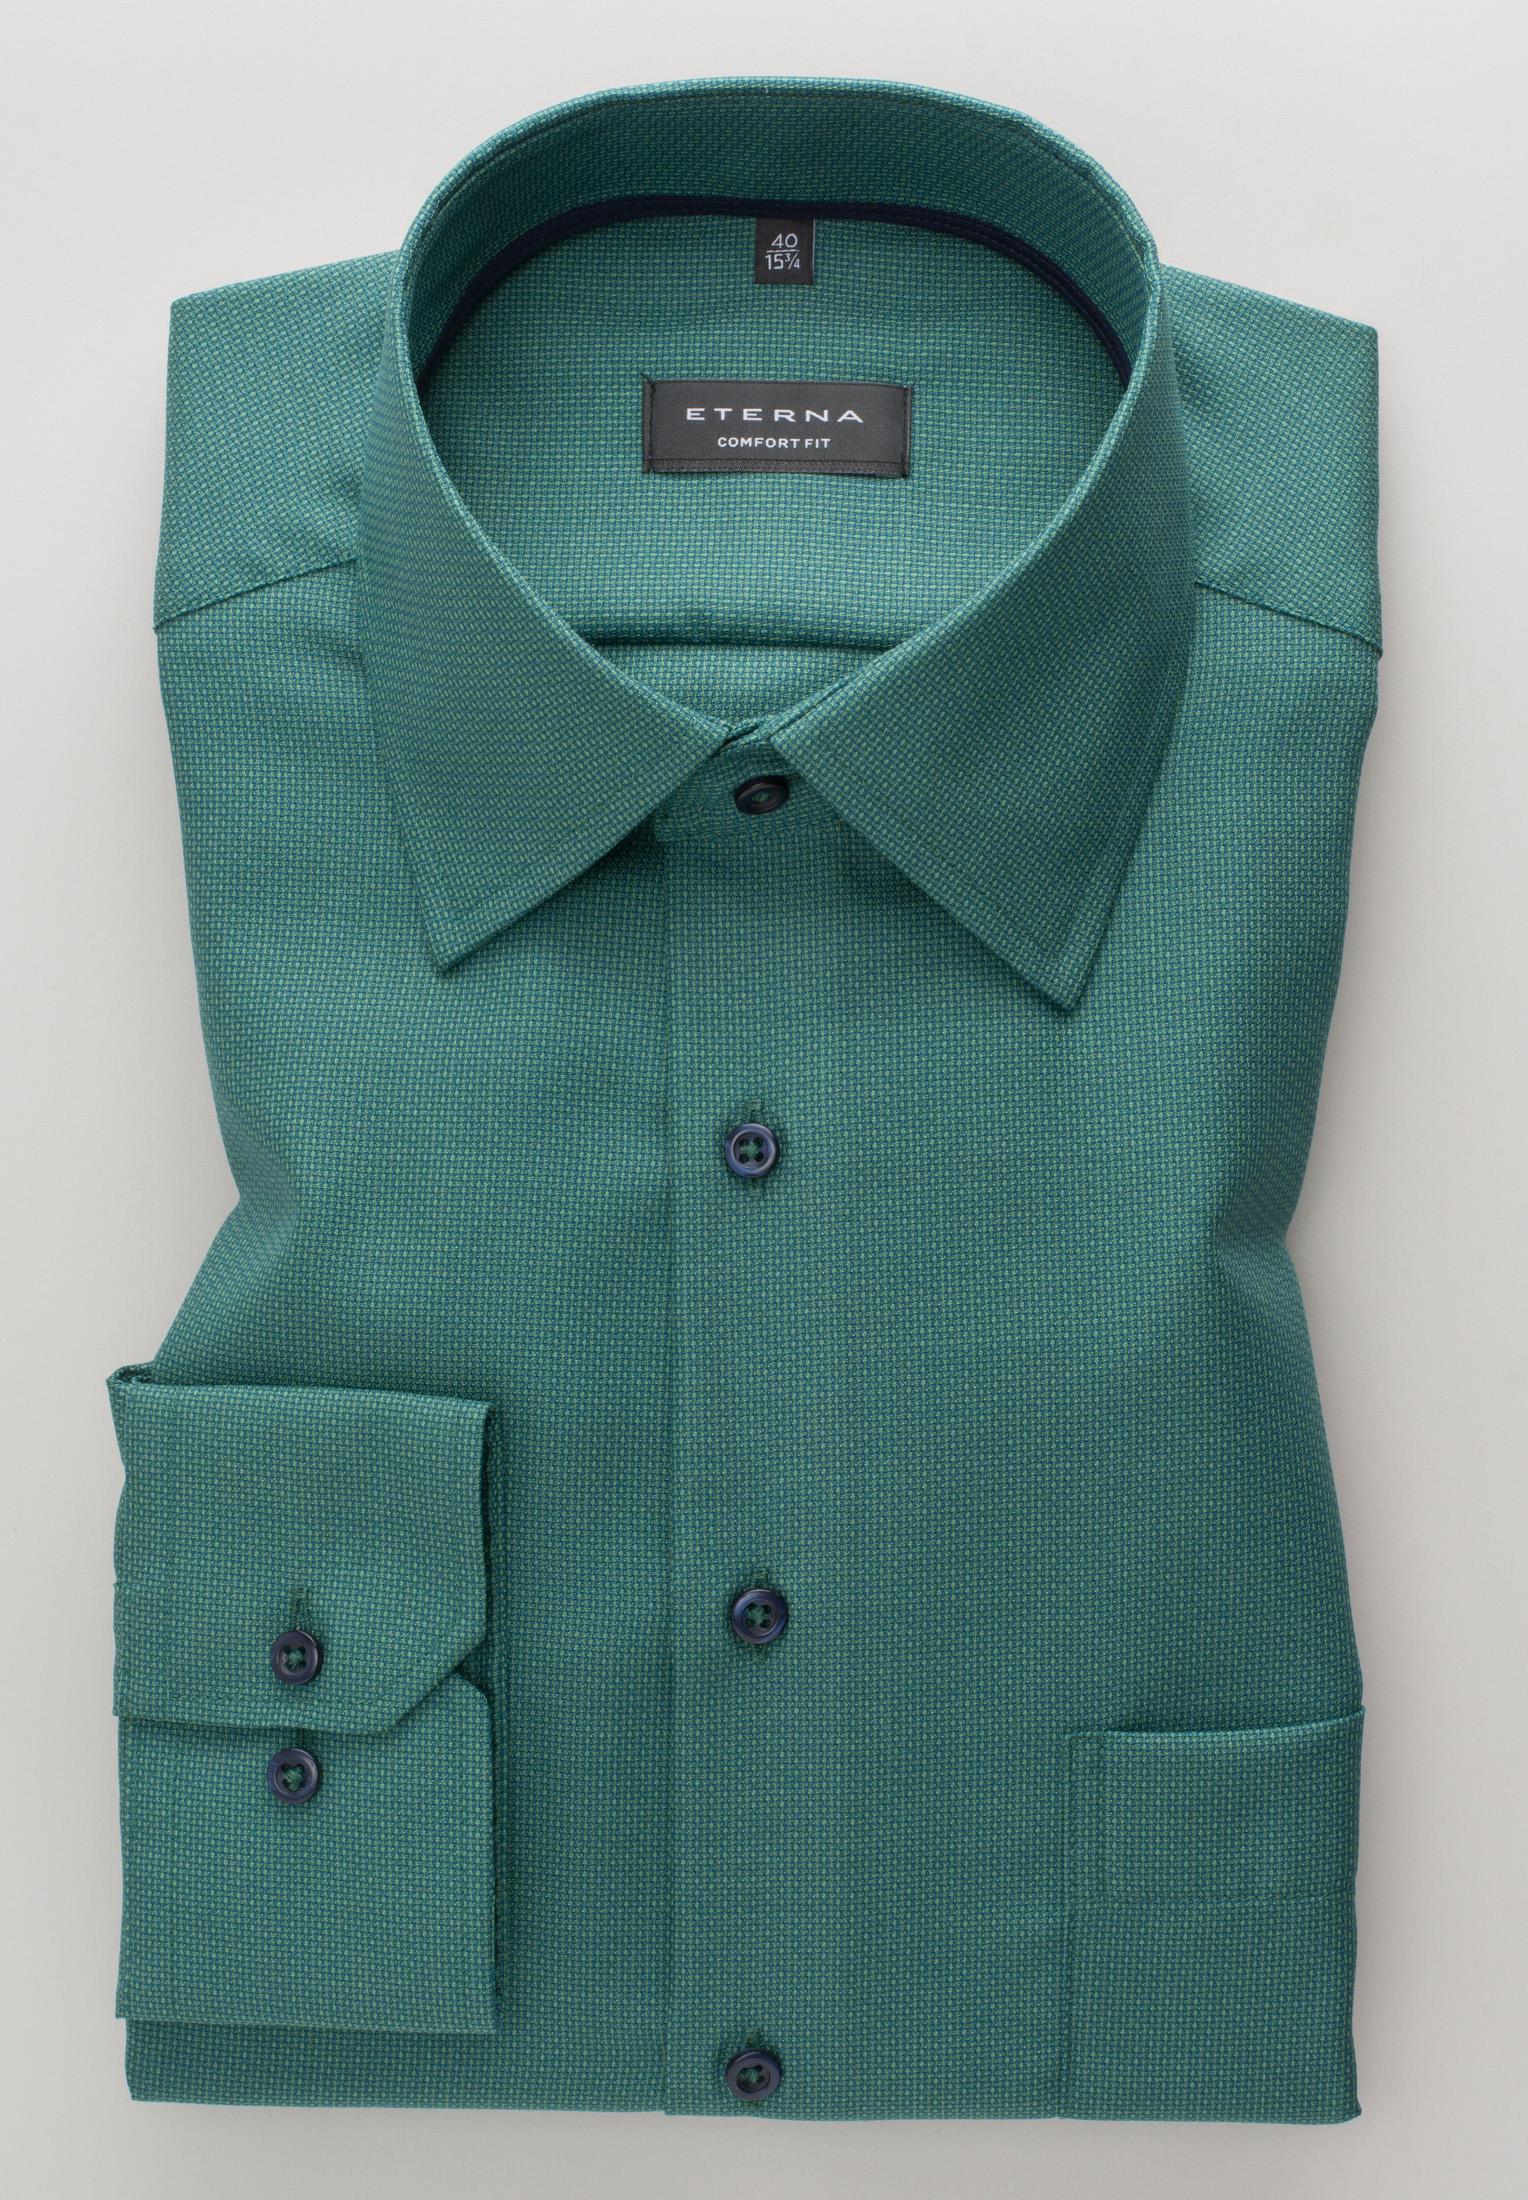 Мужская рубашка ETERNA, зеленая, цвет зеленый, размер 46 - фото 5